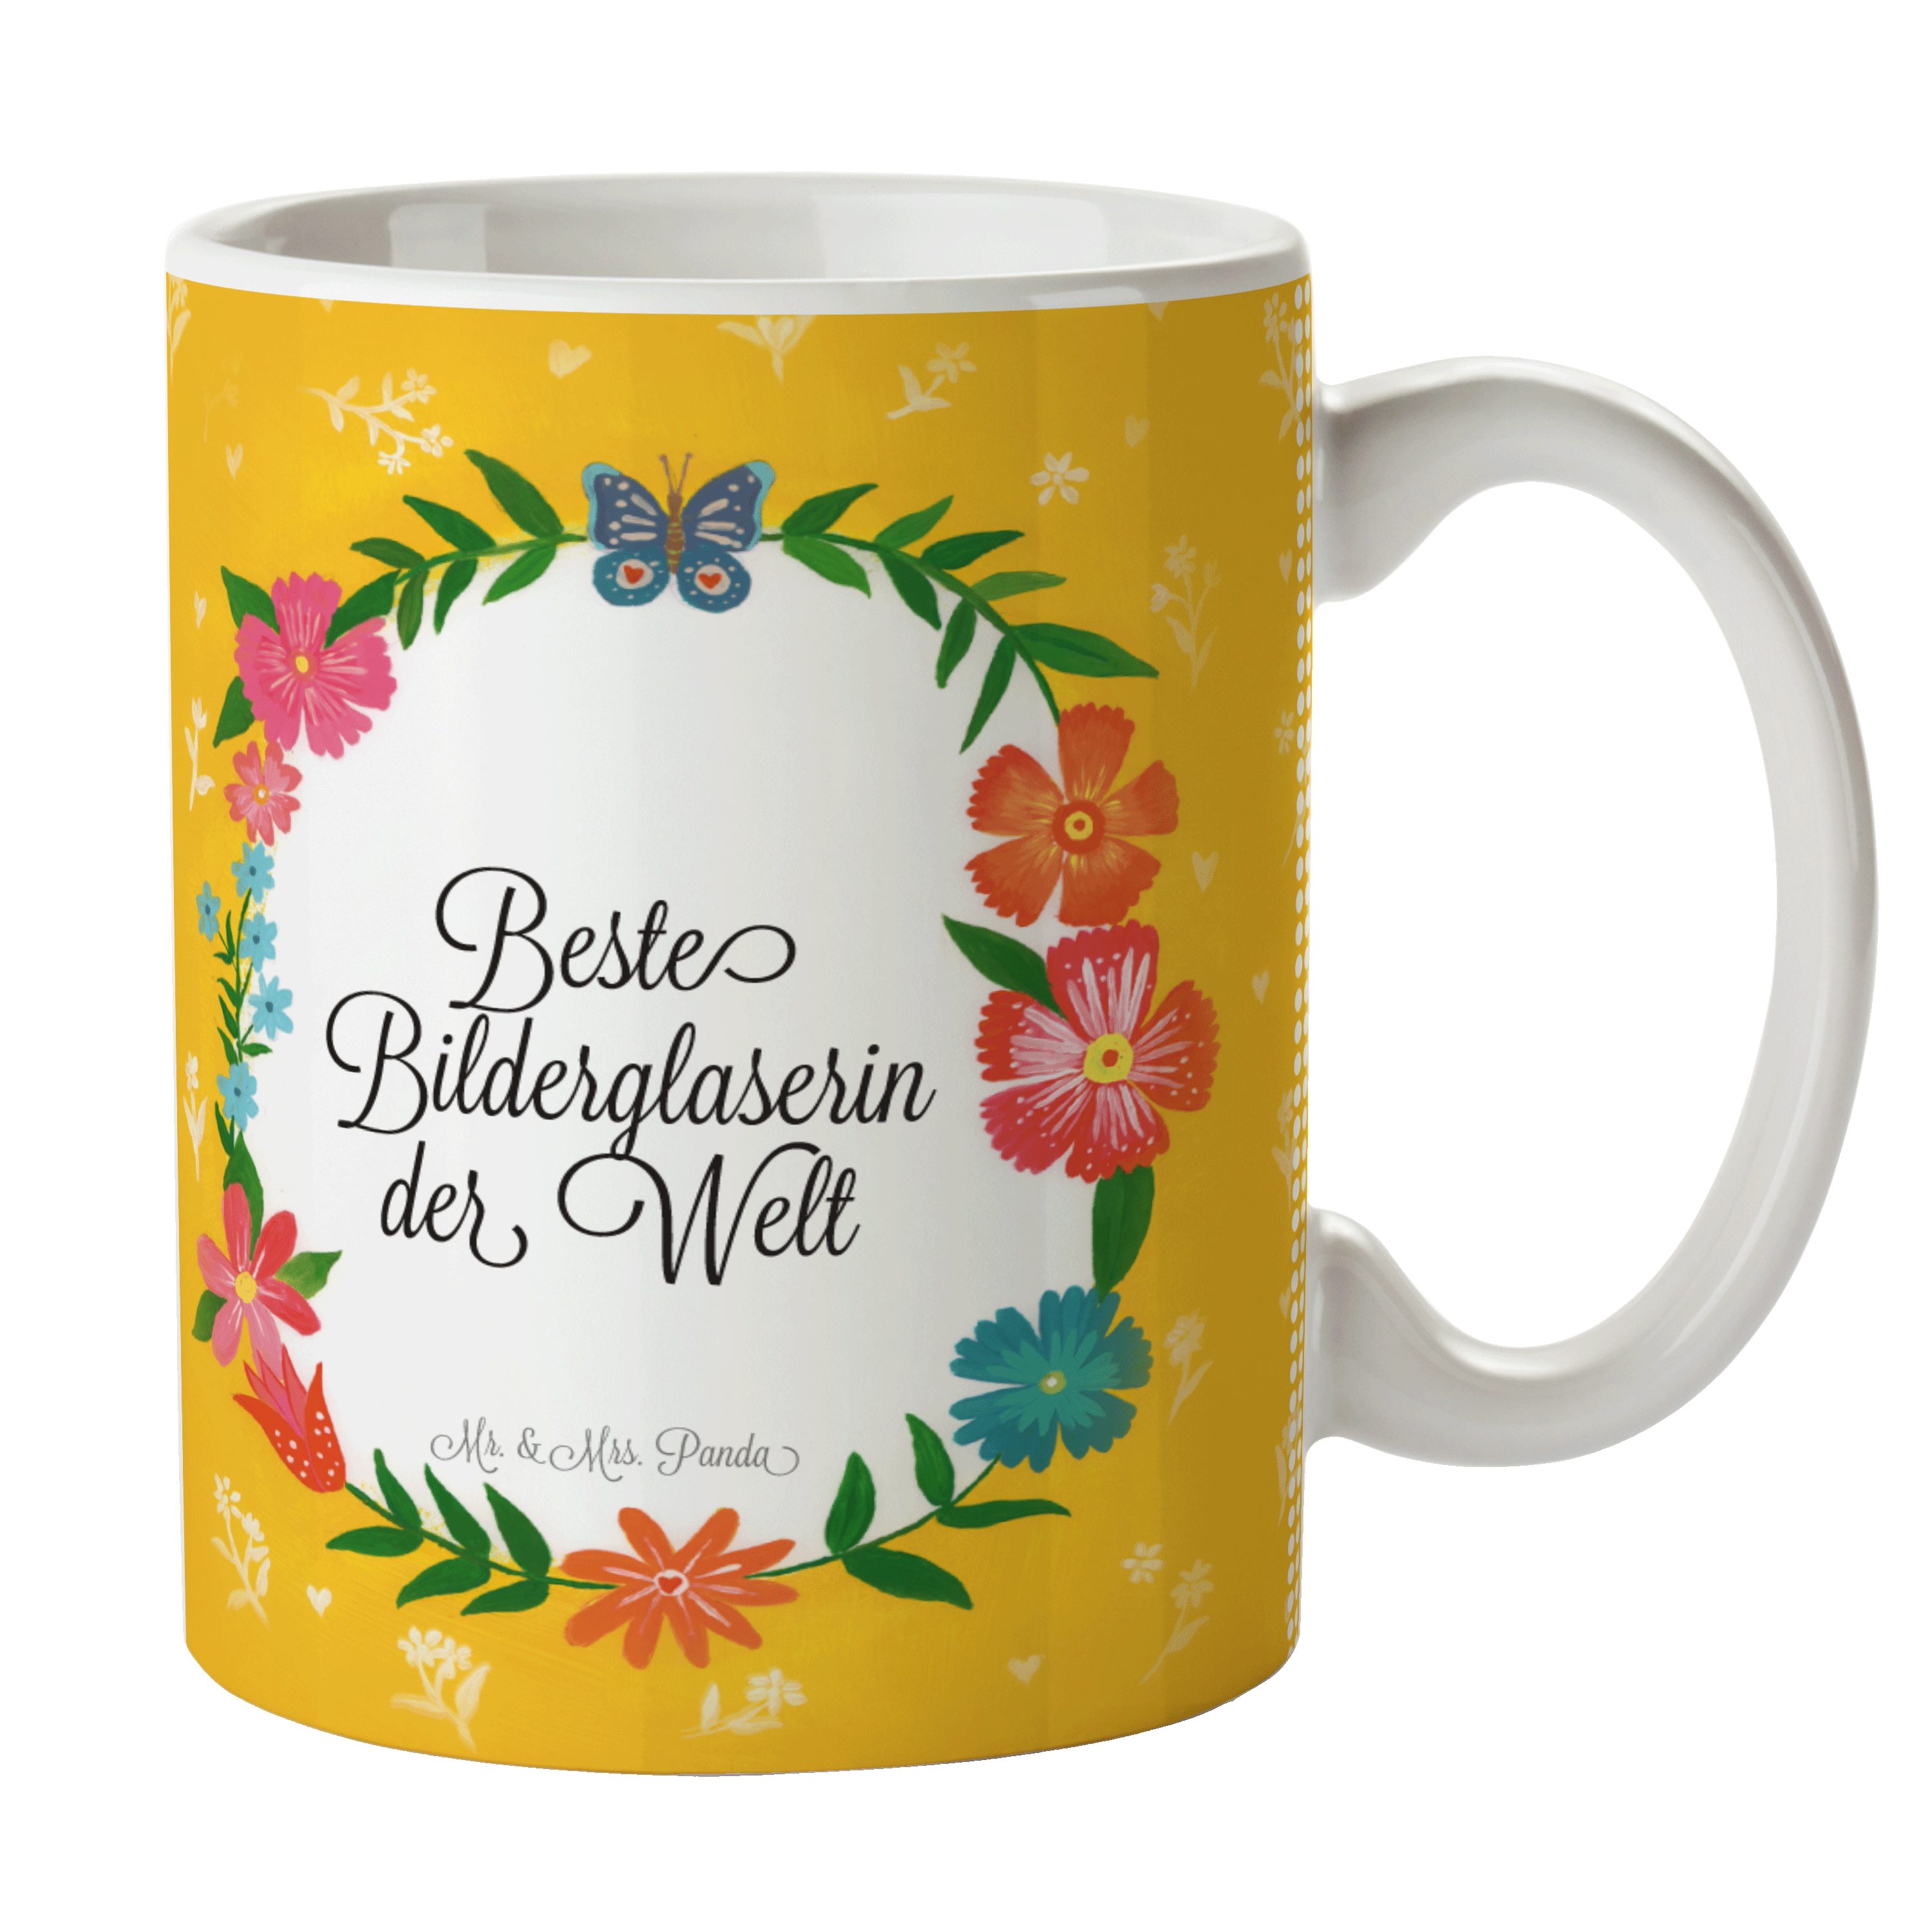 Mr. & Mrs. Panda Tasse Bilderglaserin - Geschenk, Abschied, Kaffeetasse, Büro Tasse, Geschen, Keramik